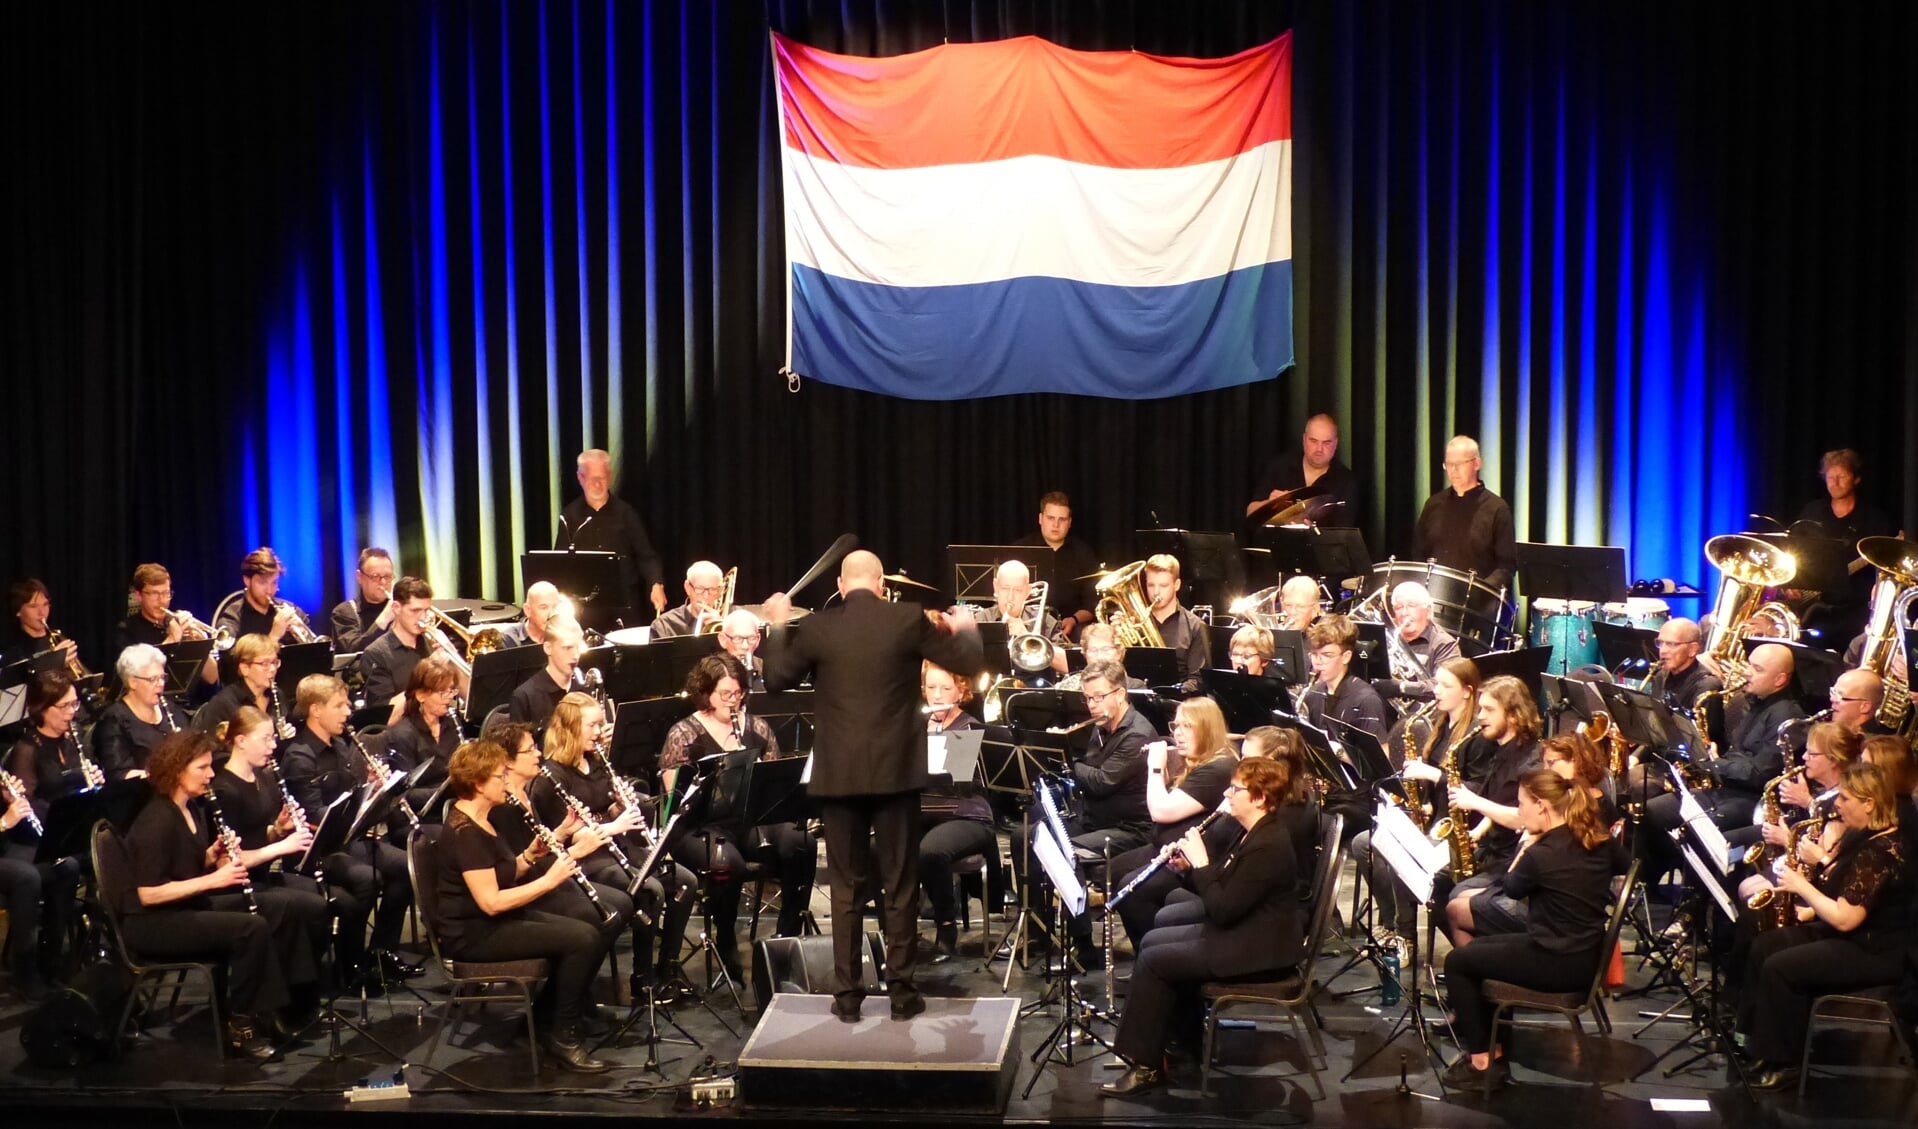 Bevrijdingsconcert in Mill gespeeld op 5 mei door muzikanten van drie verenigingen. (Foto: Willem Cranen)